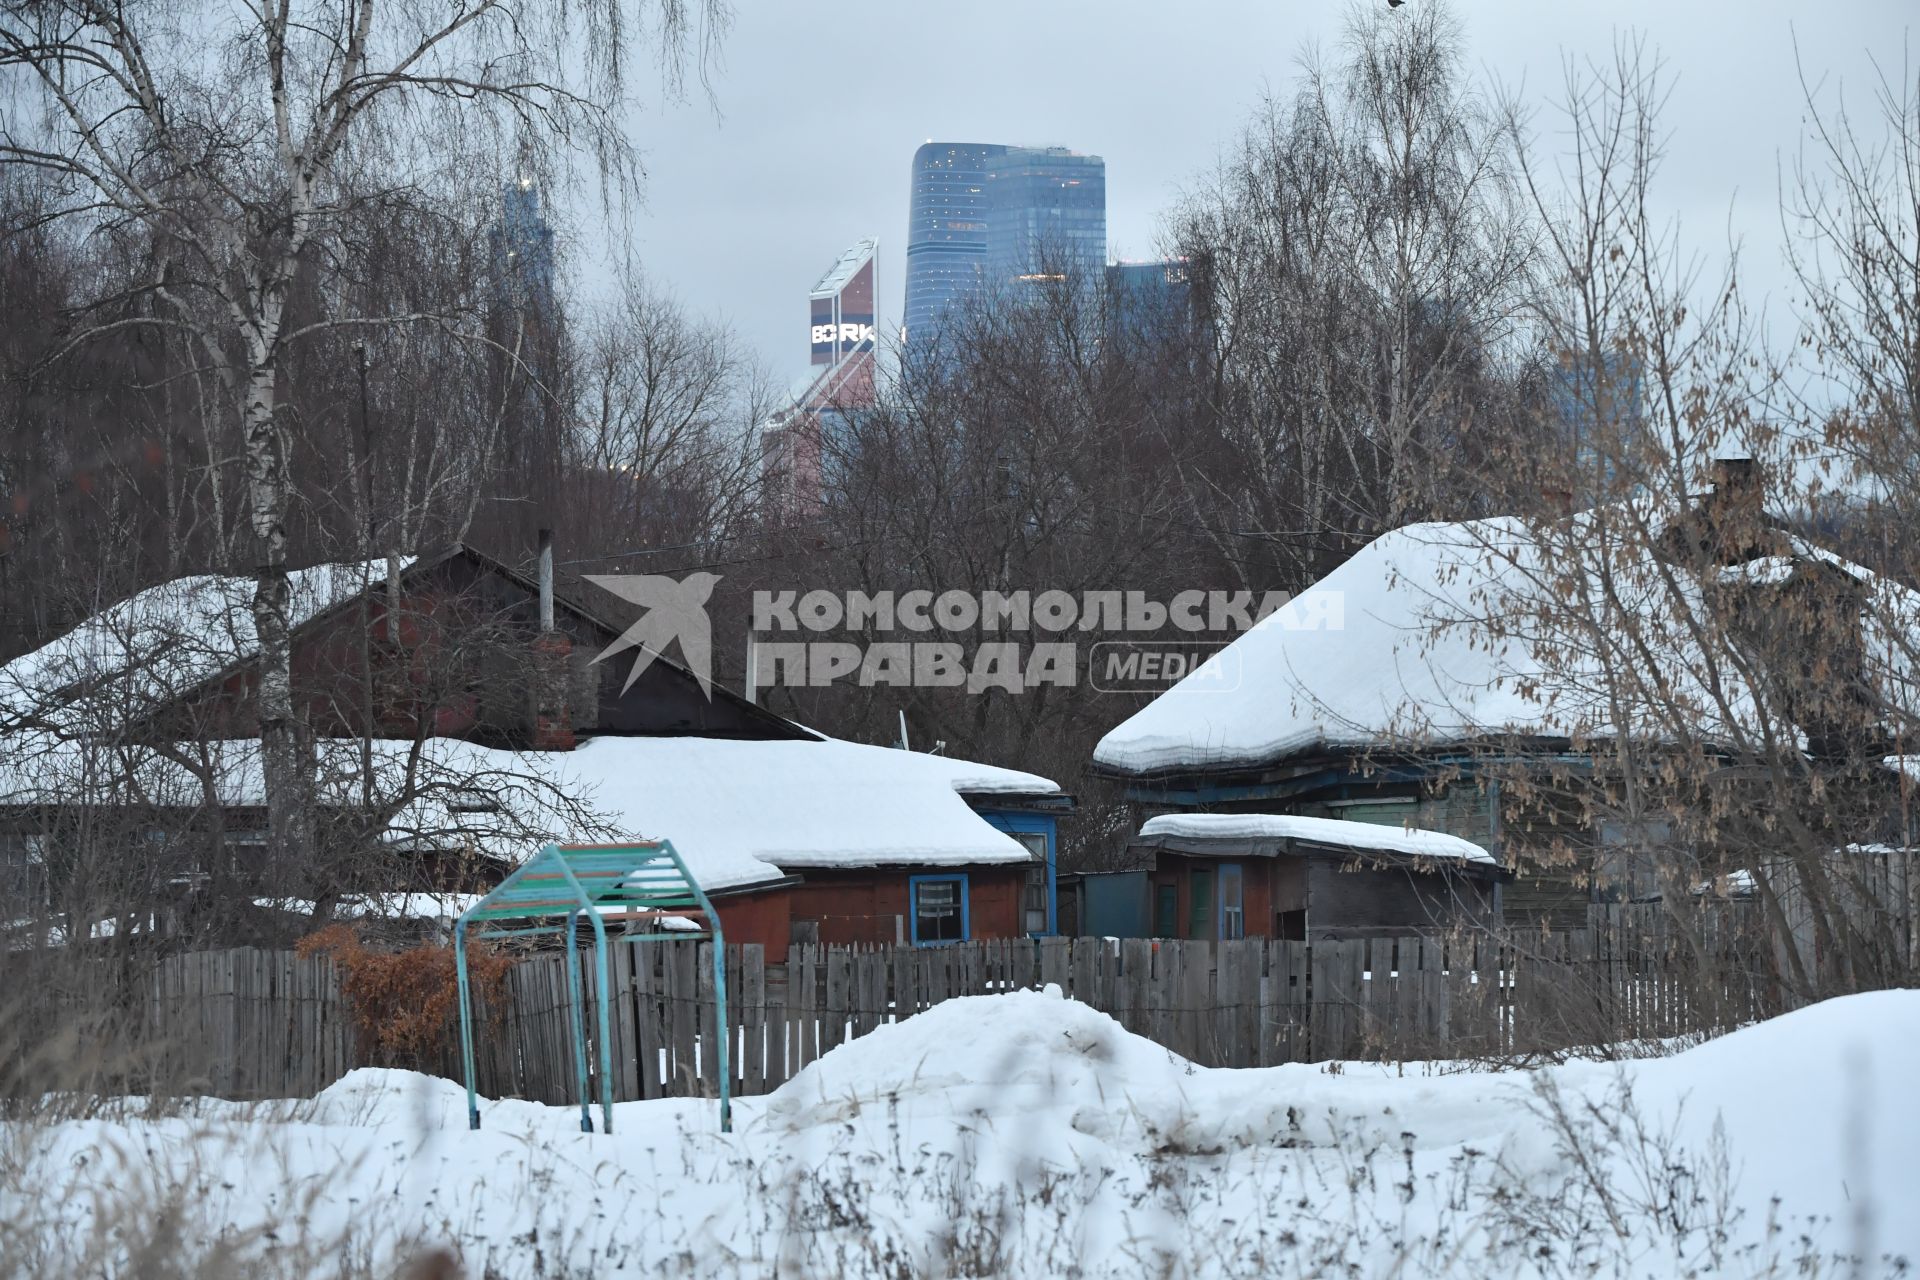 Москва. Вид на деревню Терехово - последнюю деревню в пределах МКАД.